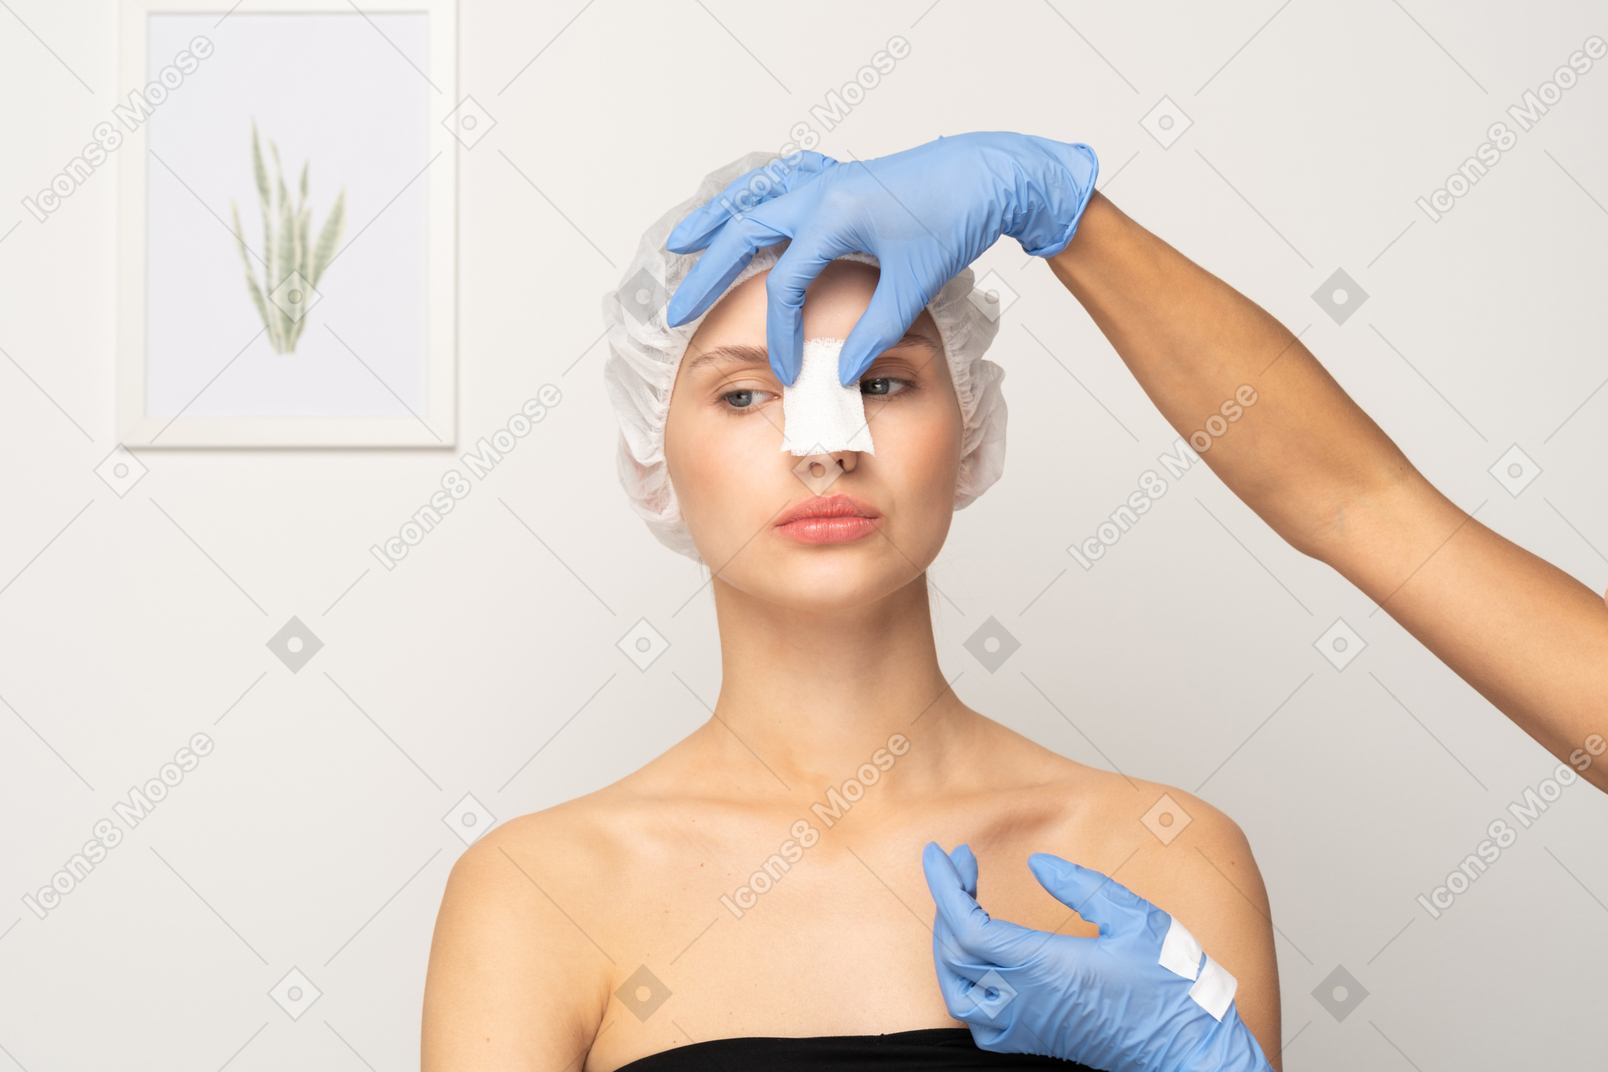 Nurse putting gauze on patient's nose